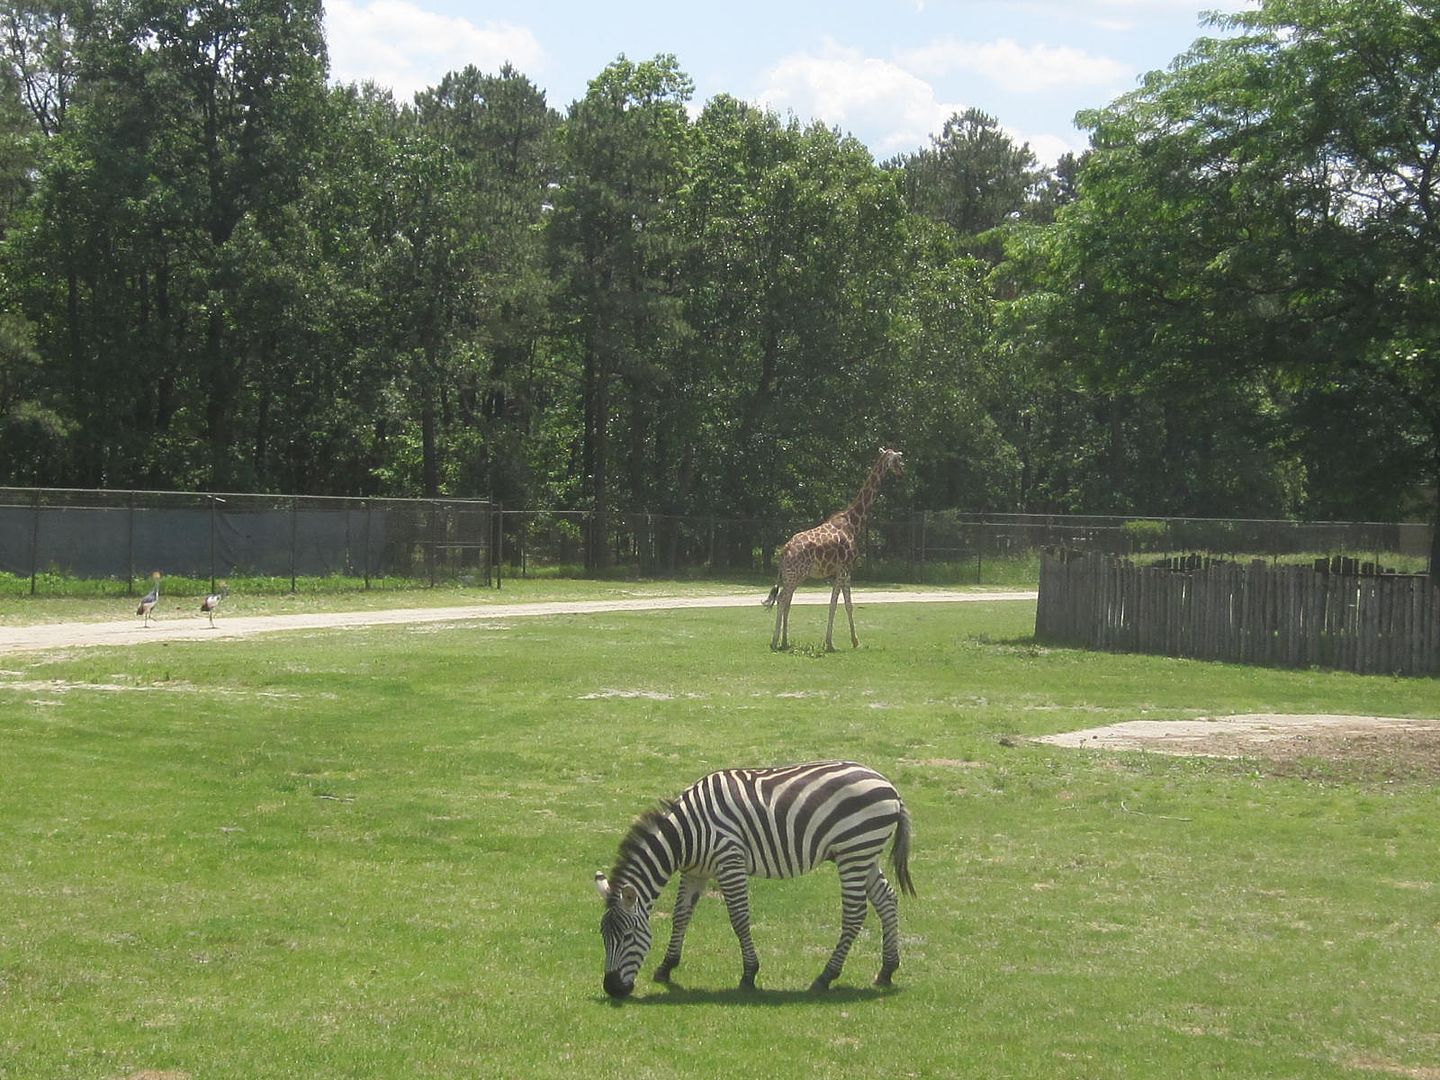 zebra and giraffe photo IMG_1285_zpsb69a4fa5.jpg